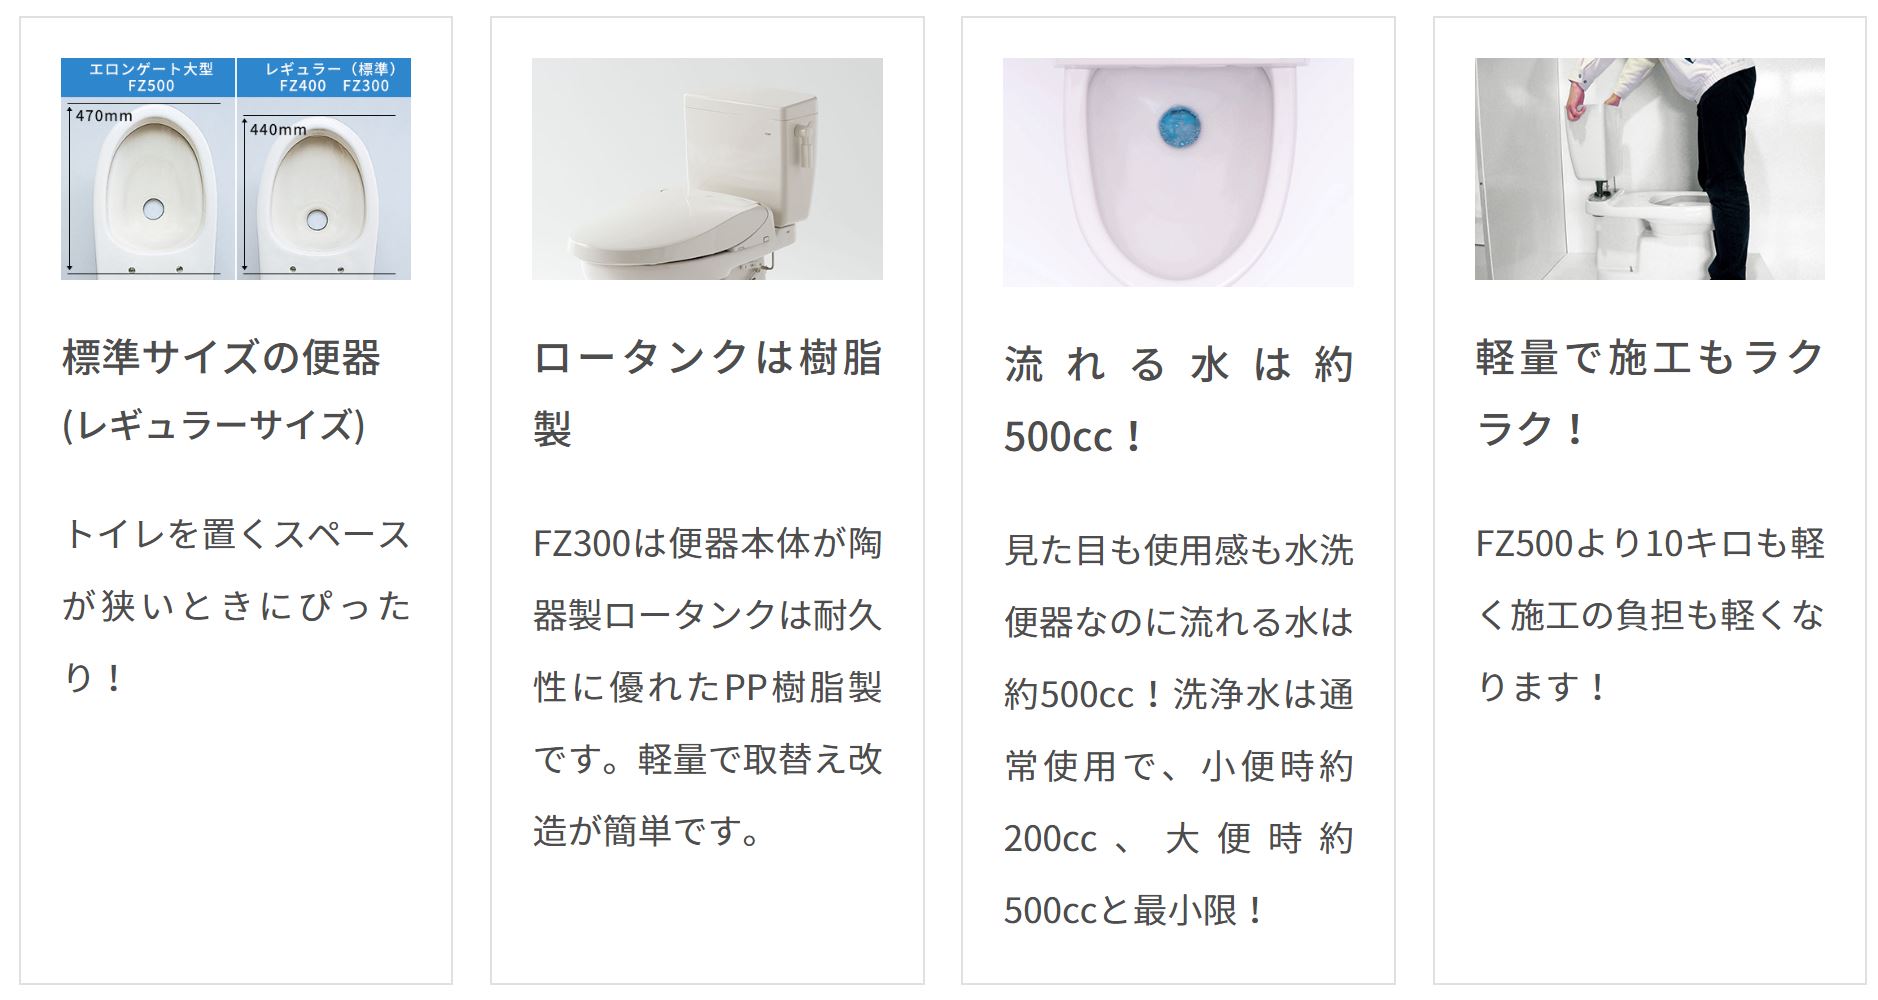 販売実績No.1 ダイワ化成 簡易水洗便器 FZ300-N00 便座無し 手洗い無 トイレ